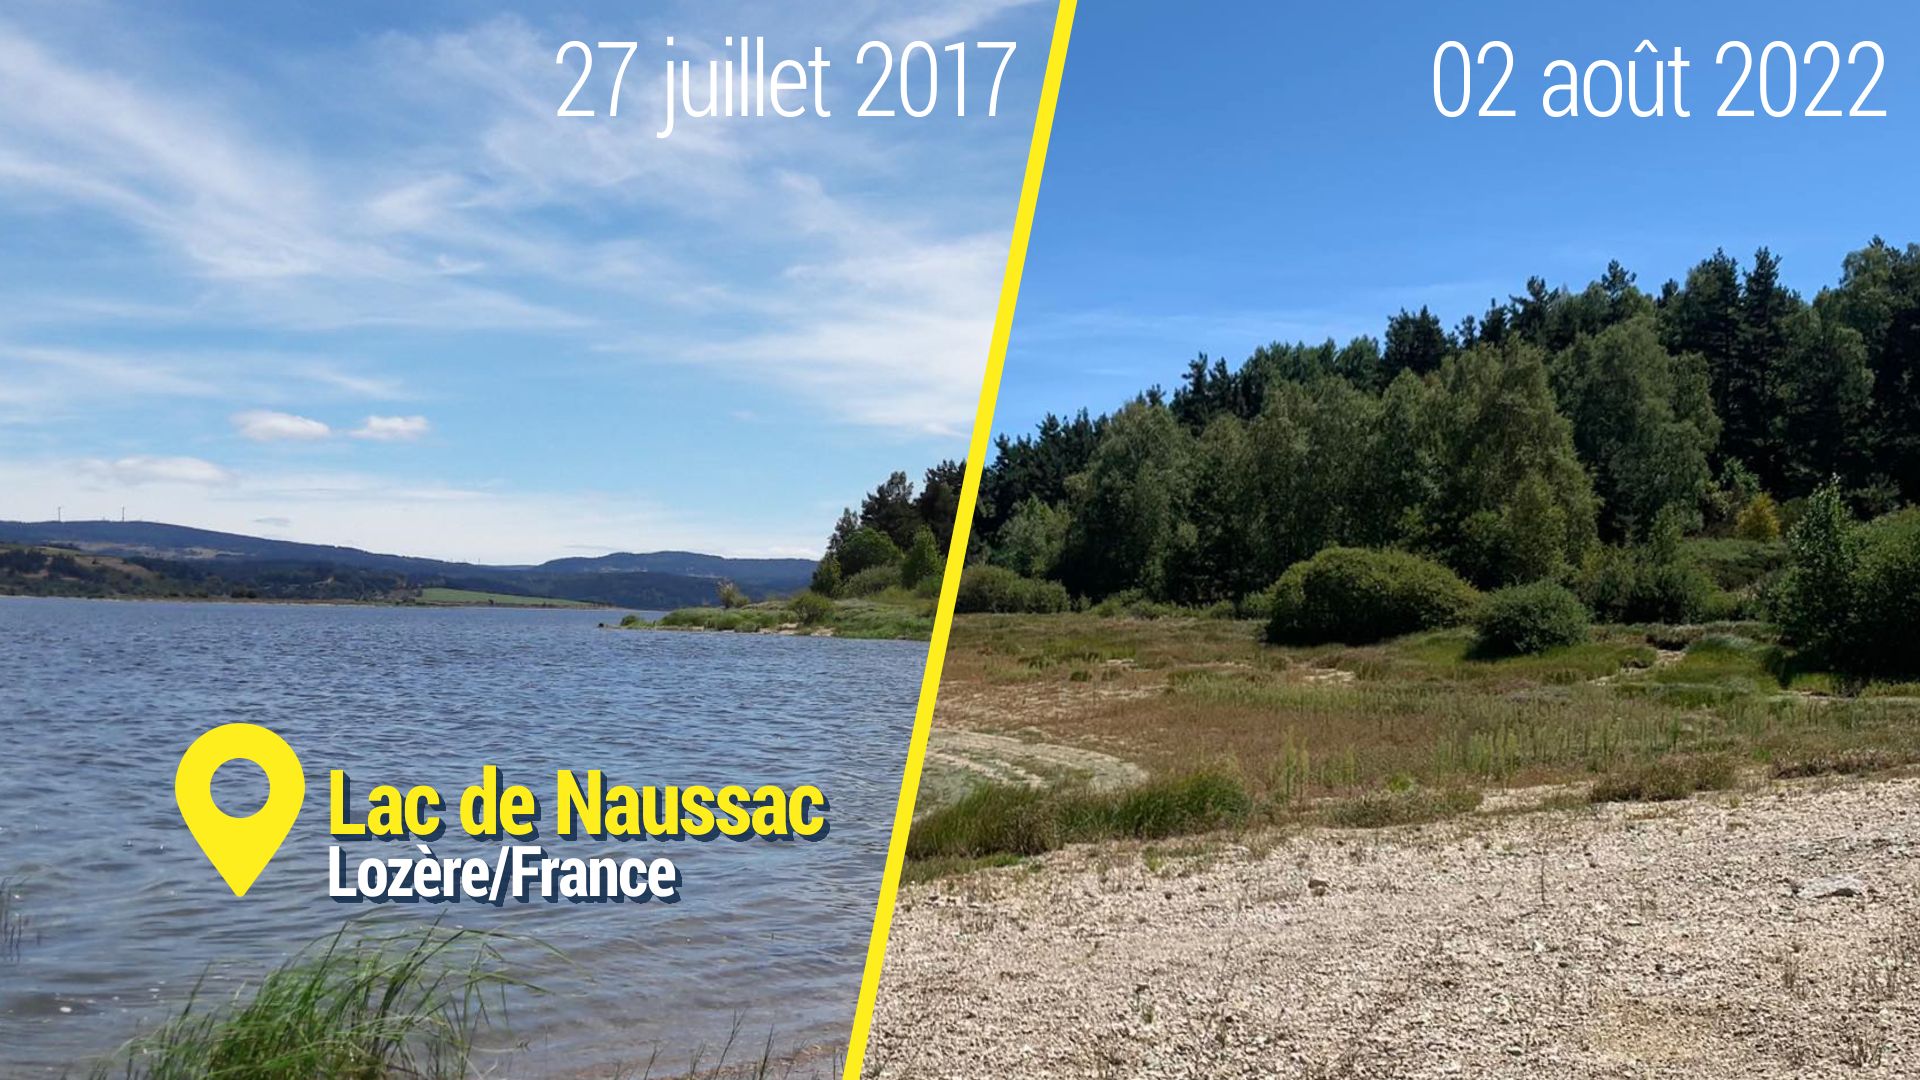 Le Lac de Naussac (Lorèze) photographié par une vacancière belge à cinq ans d’intervalle.